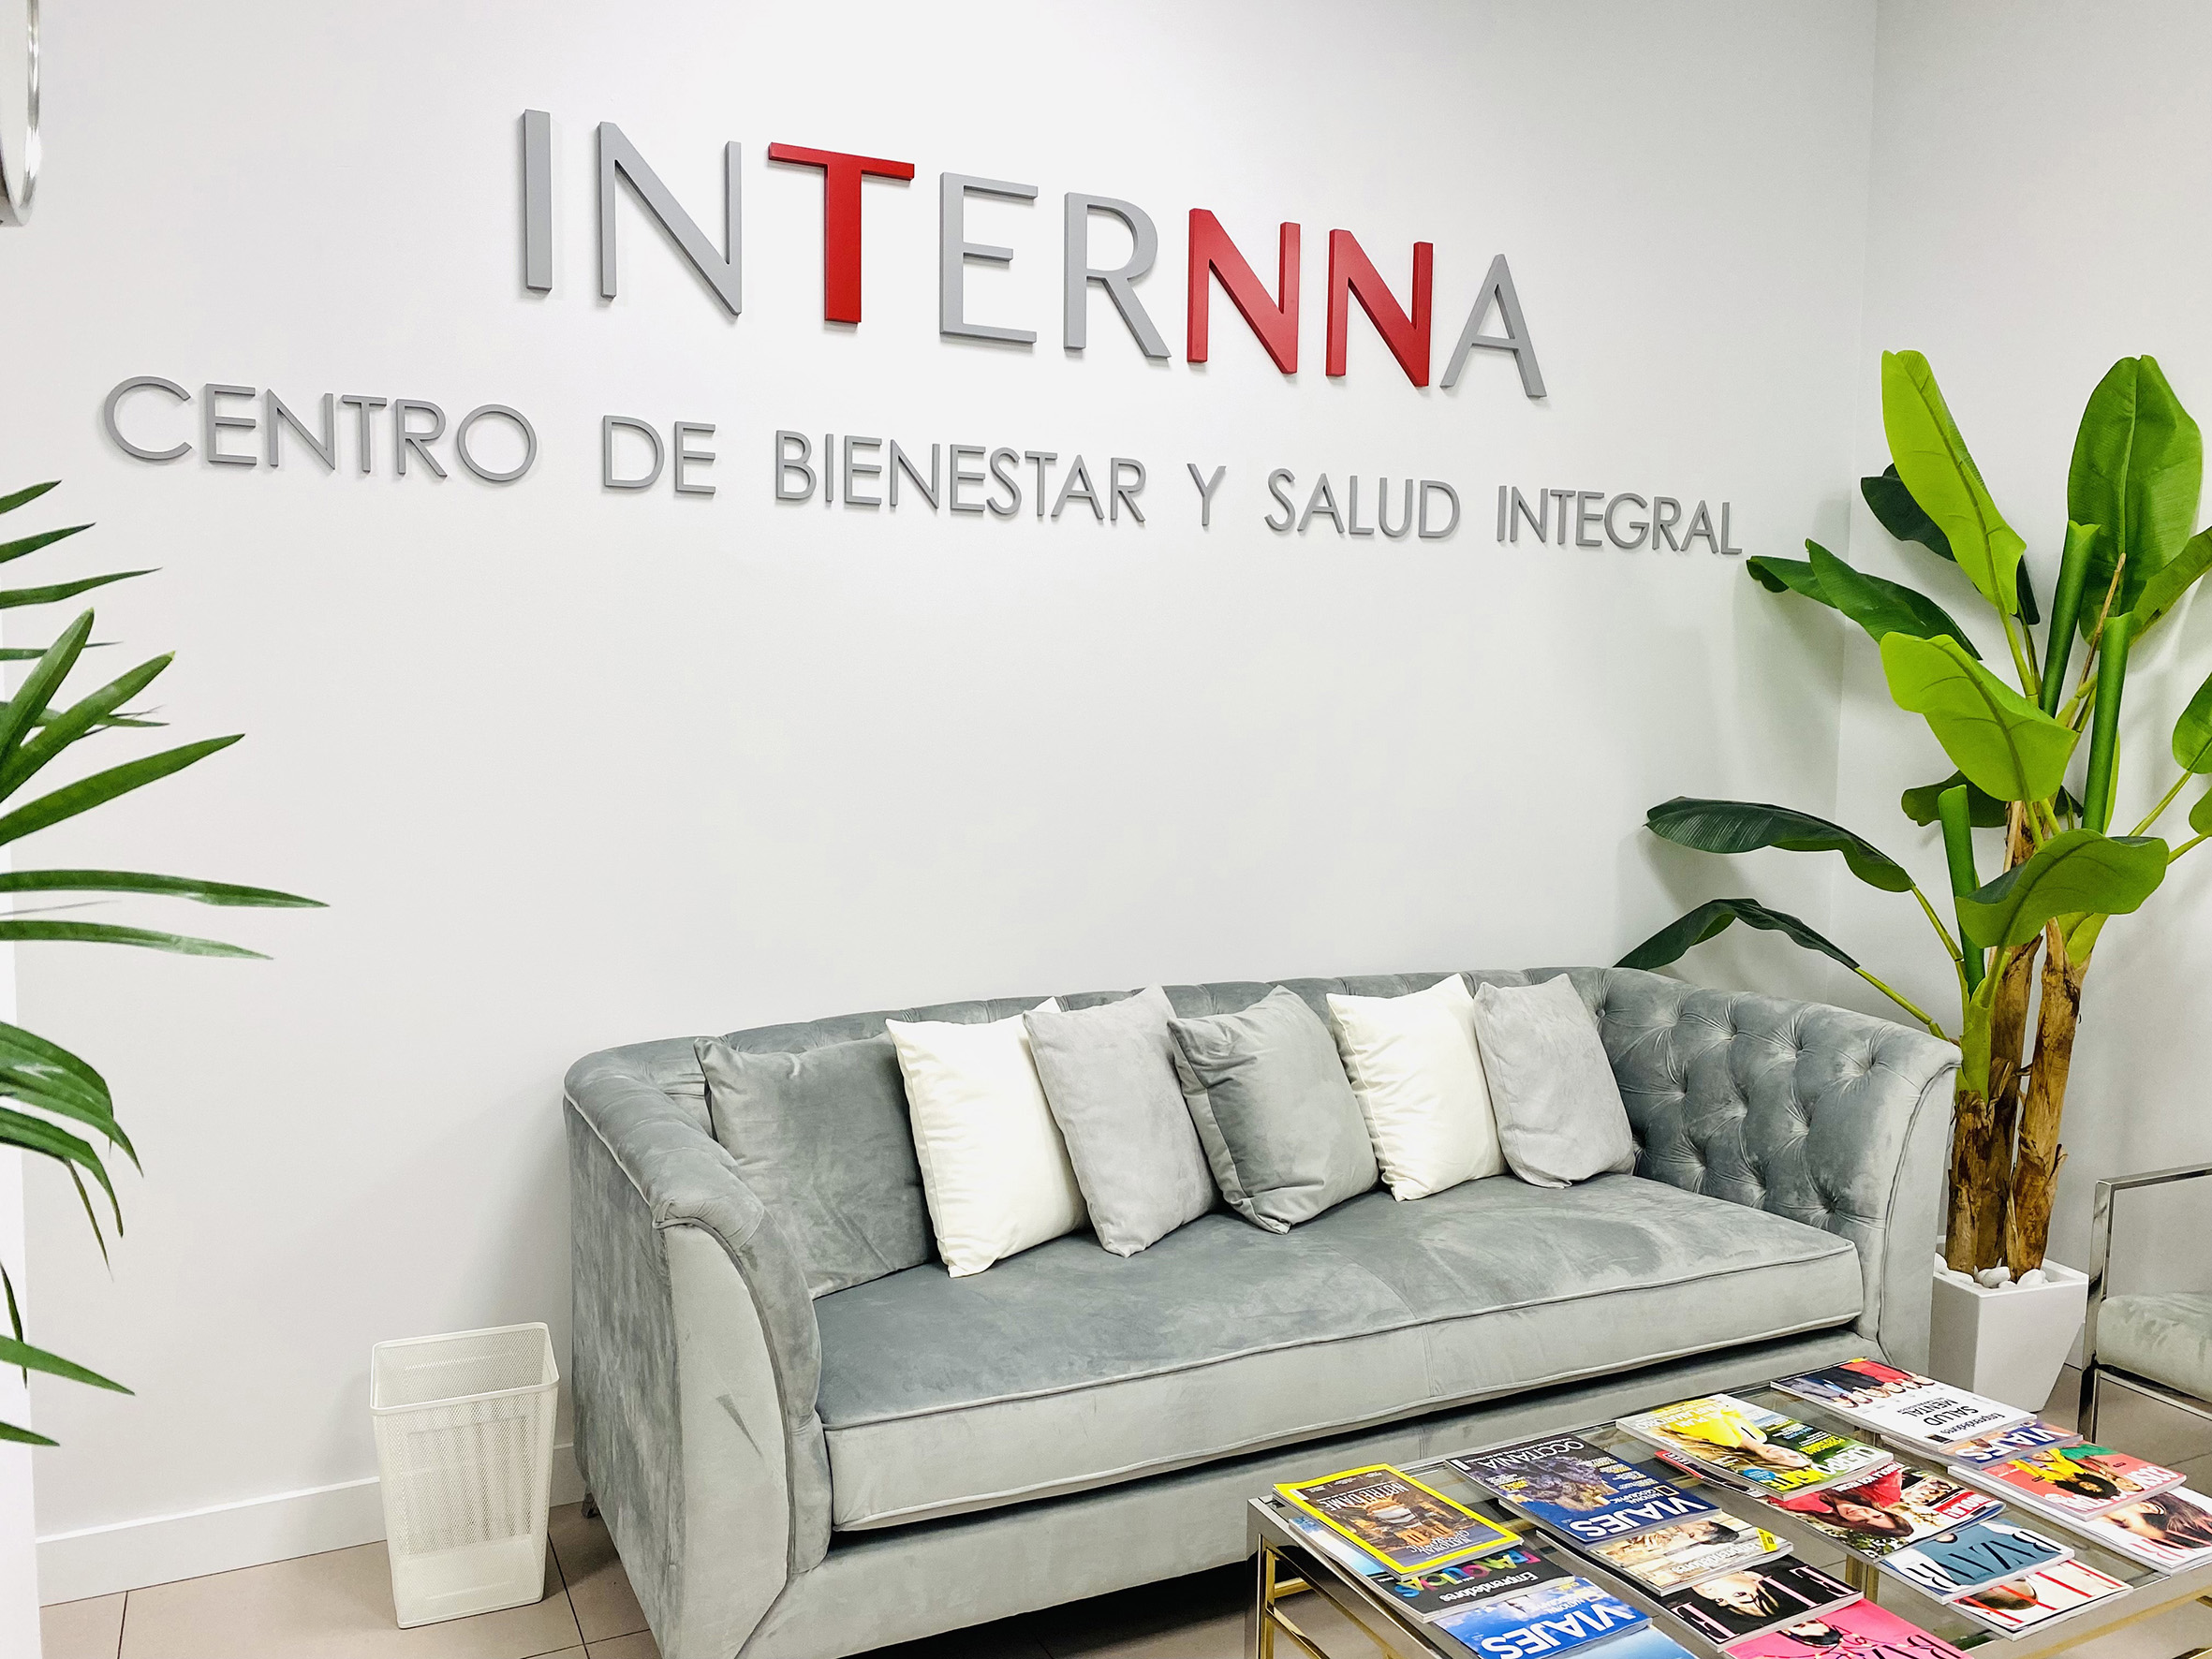 (c) Internna.es